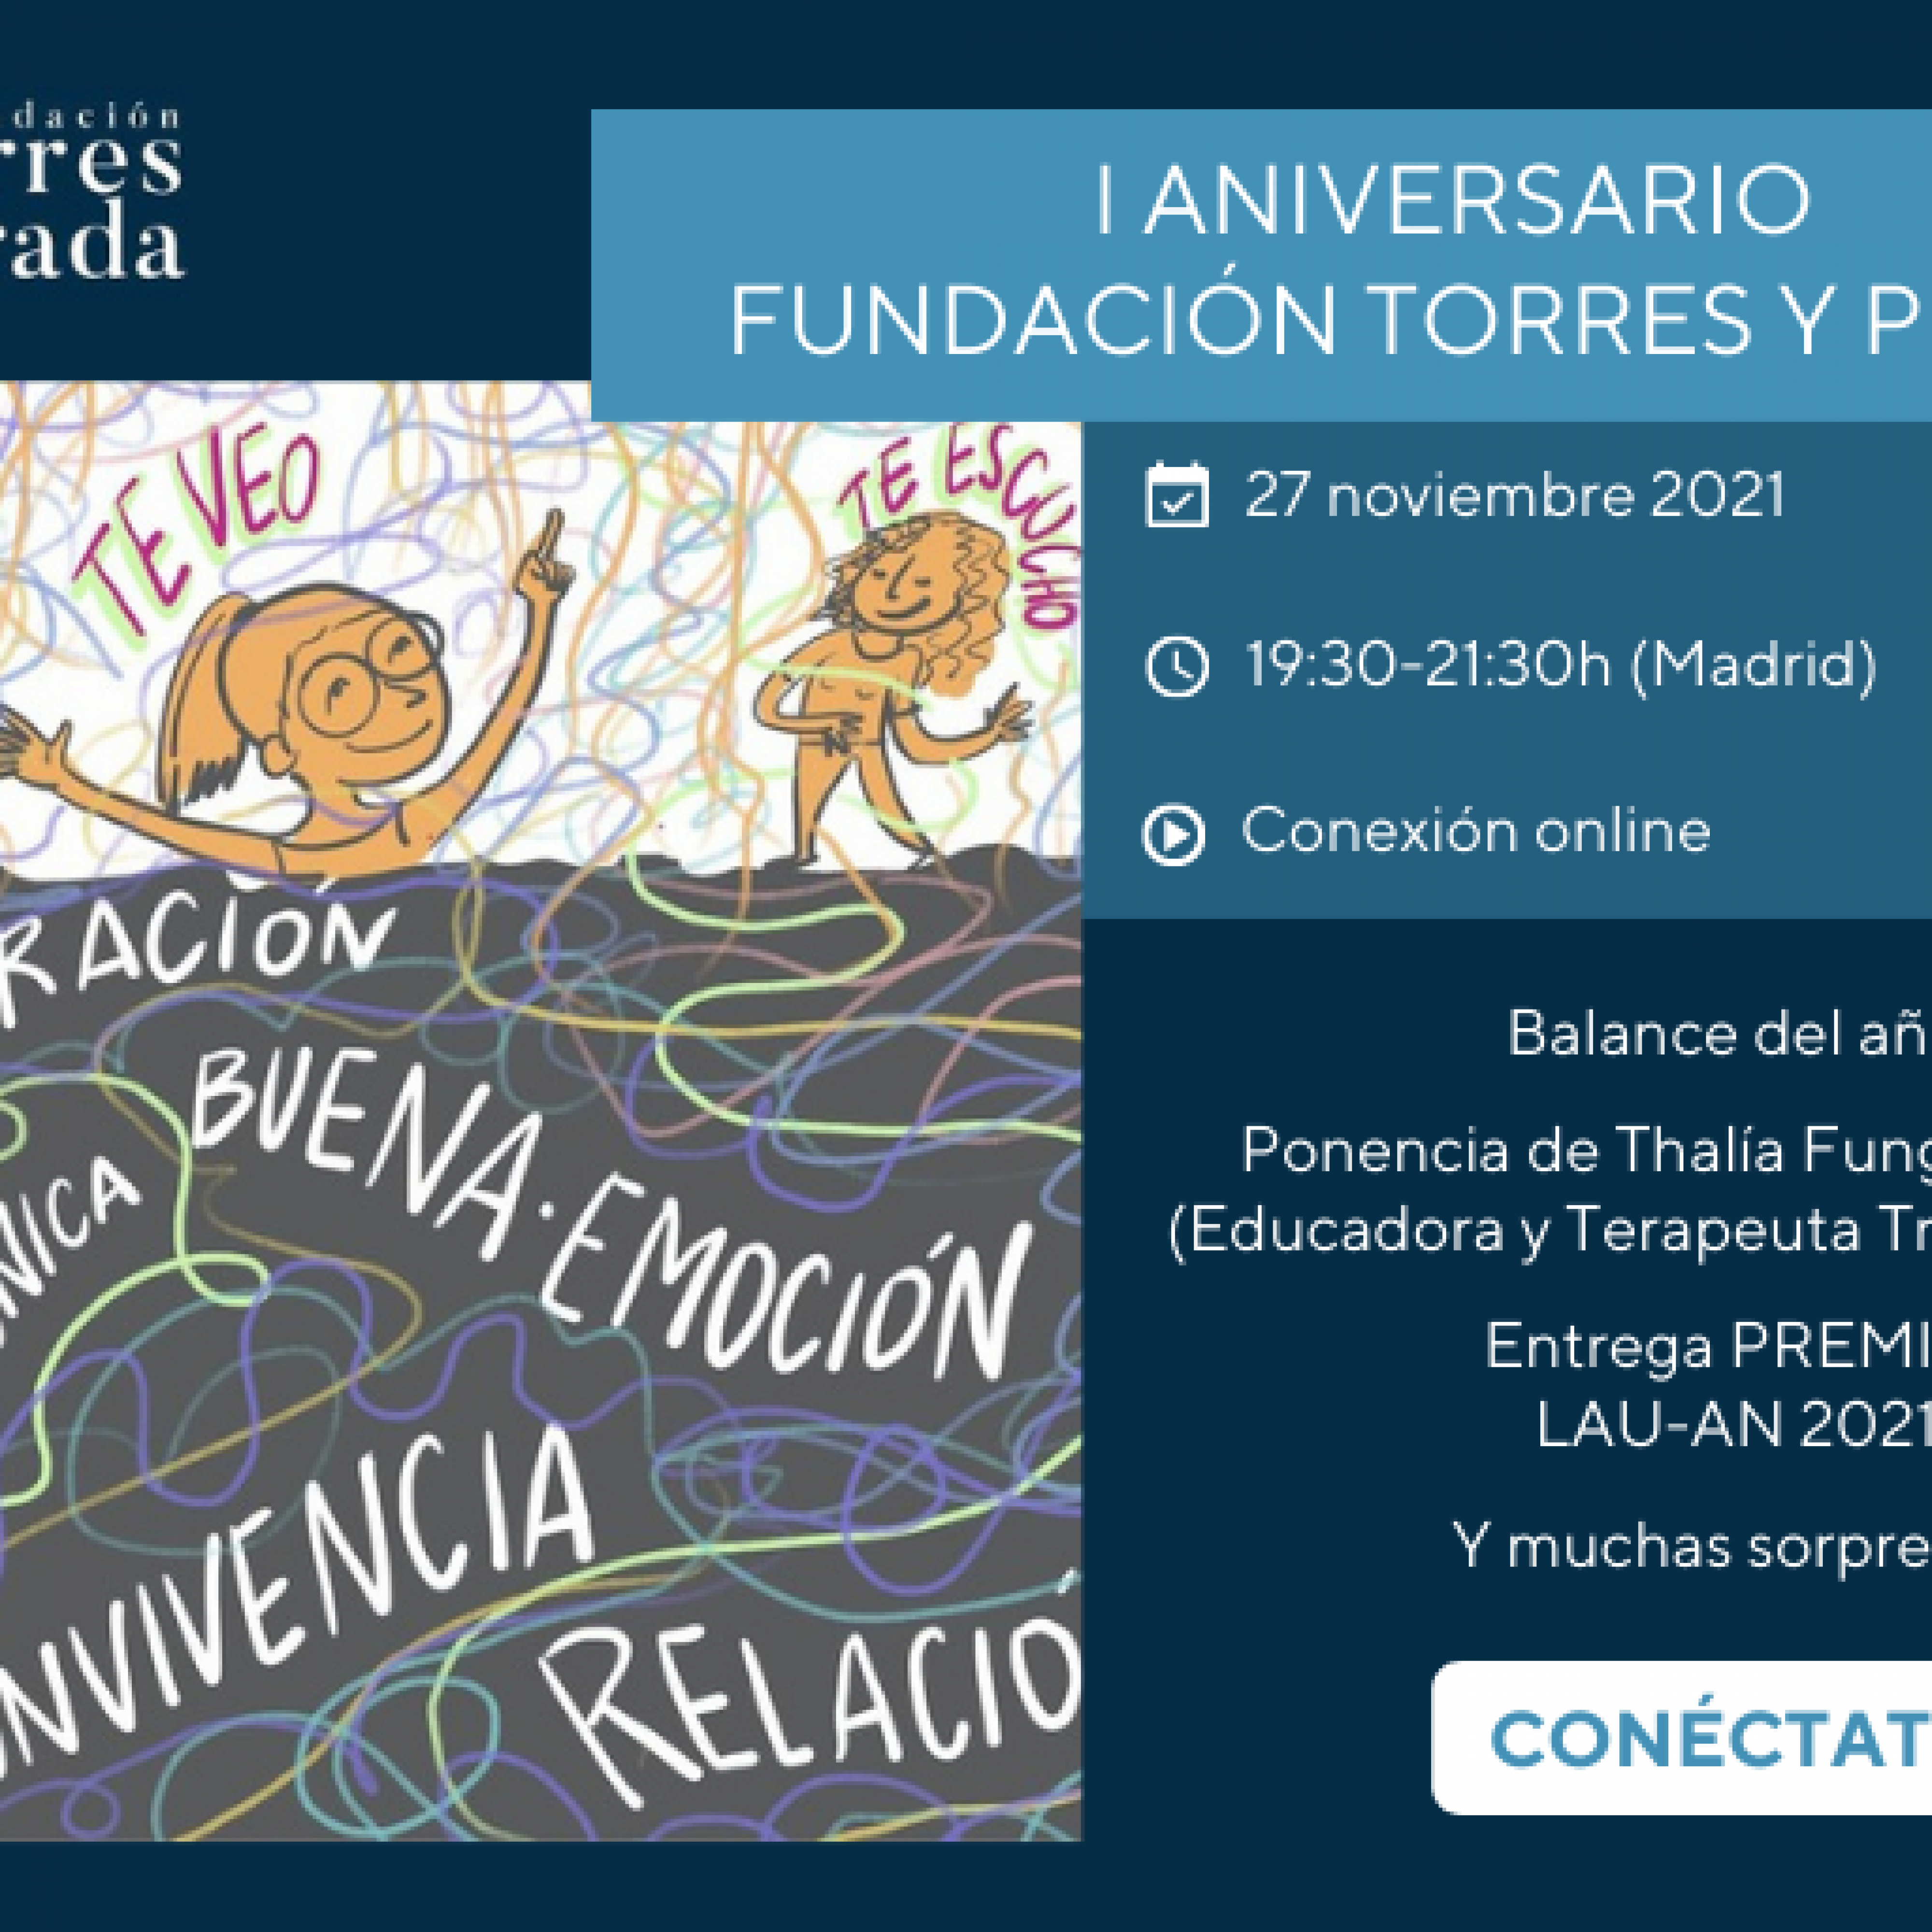 I Aniversario de la Fundación Torres y Prada